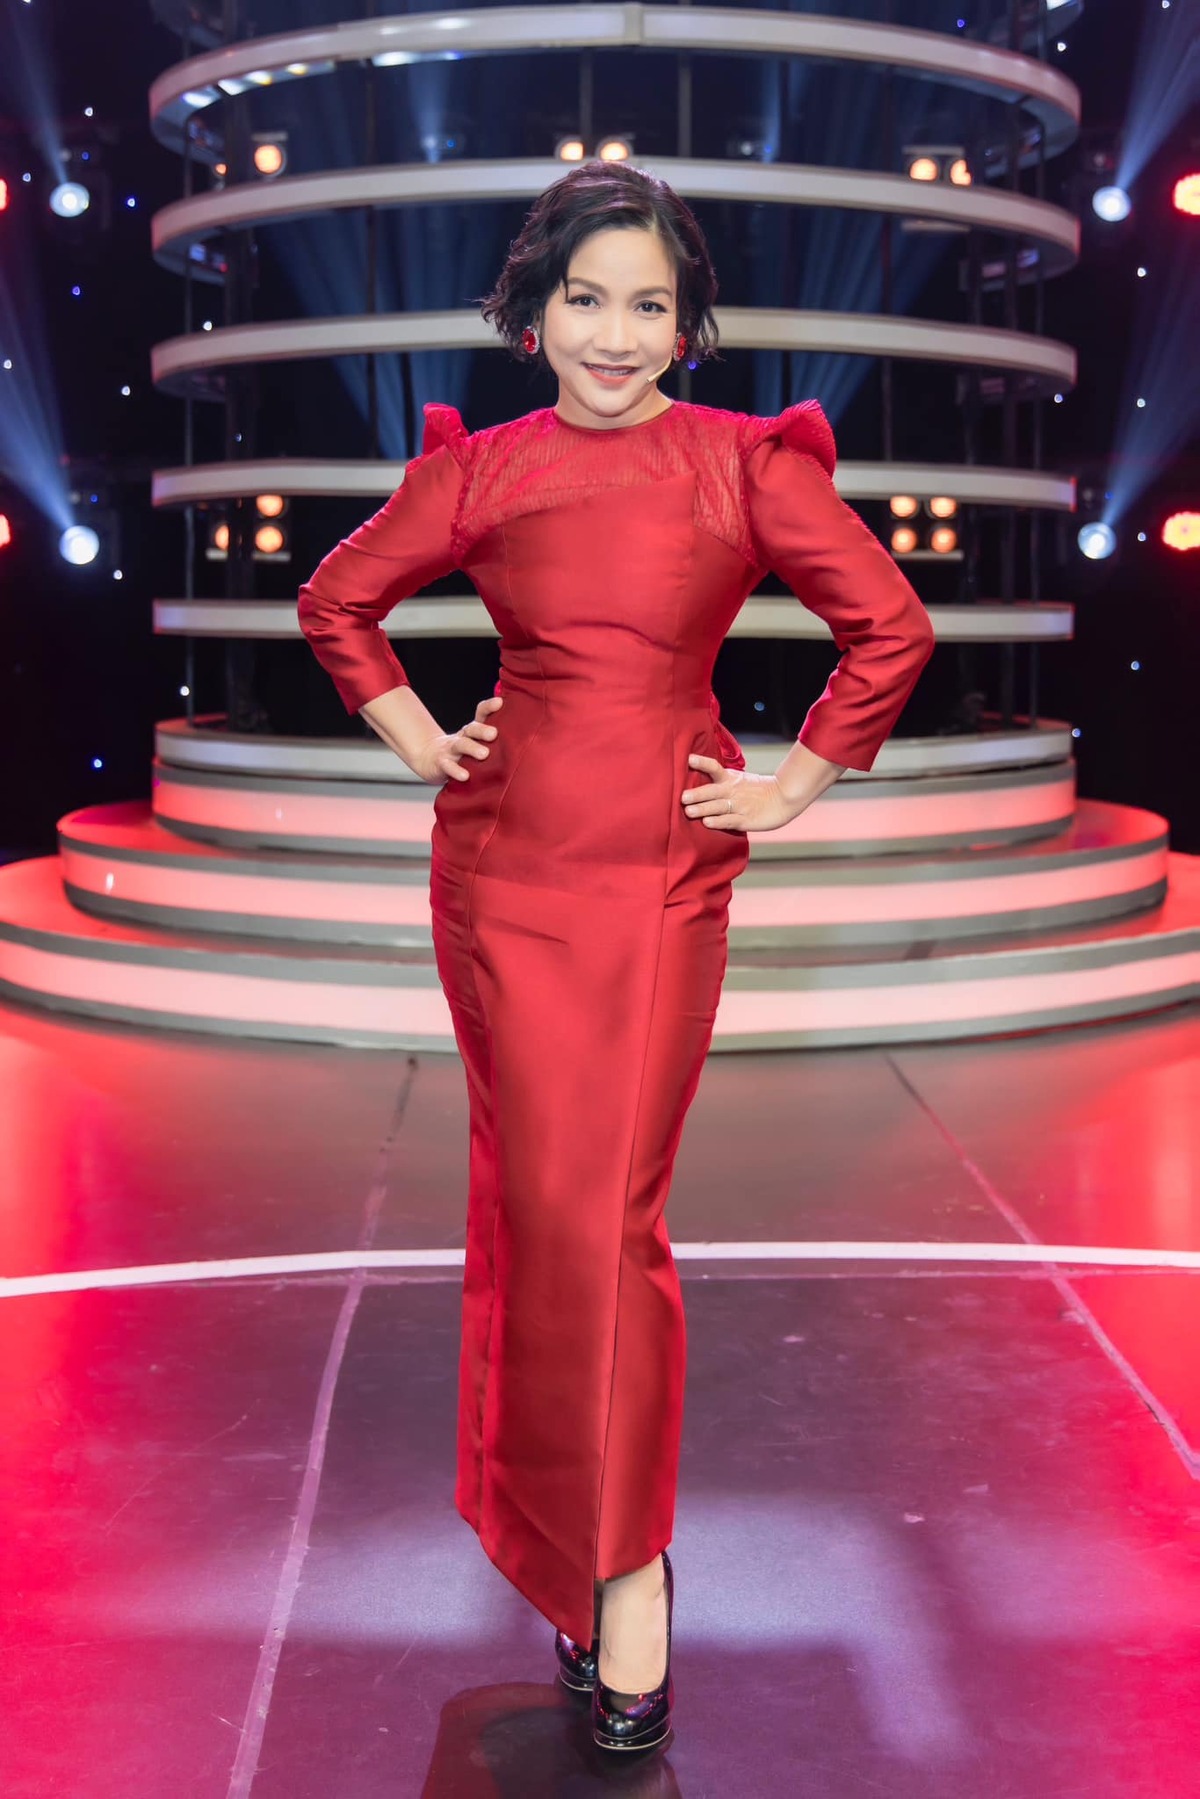 Diva Mỹ Linh vẫn giữ vững phong độ trong lòng khán giả sau hàng chục năm ca hát.